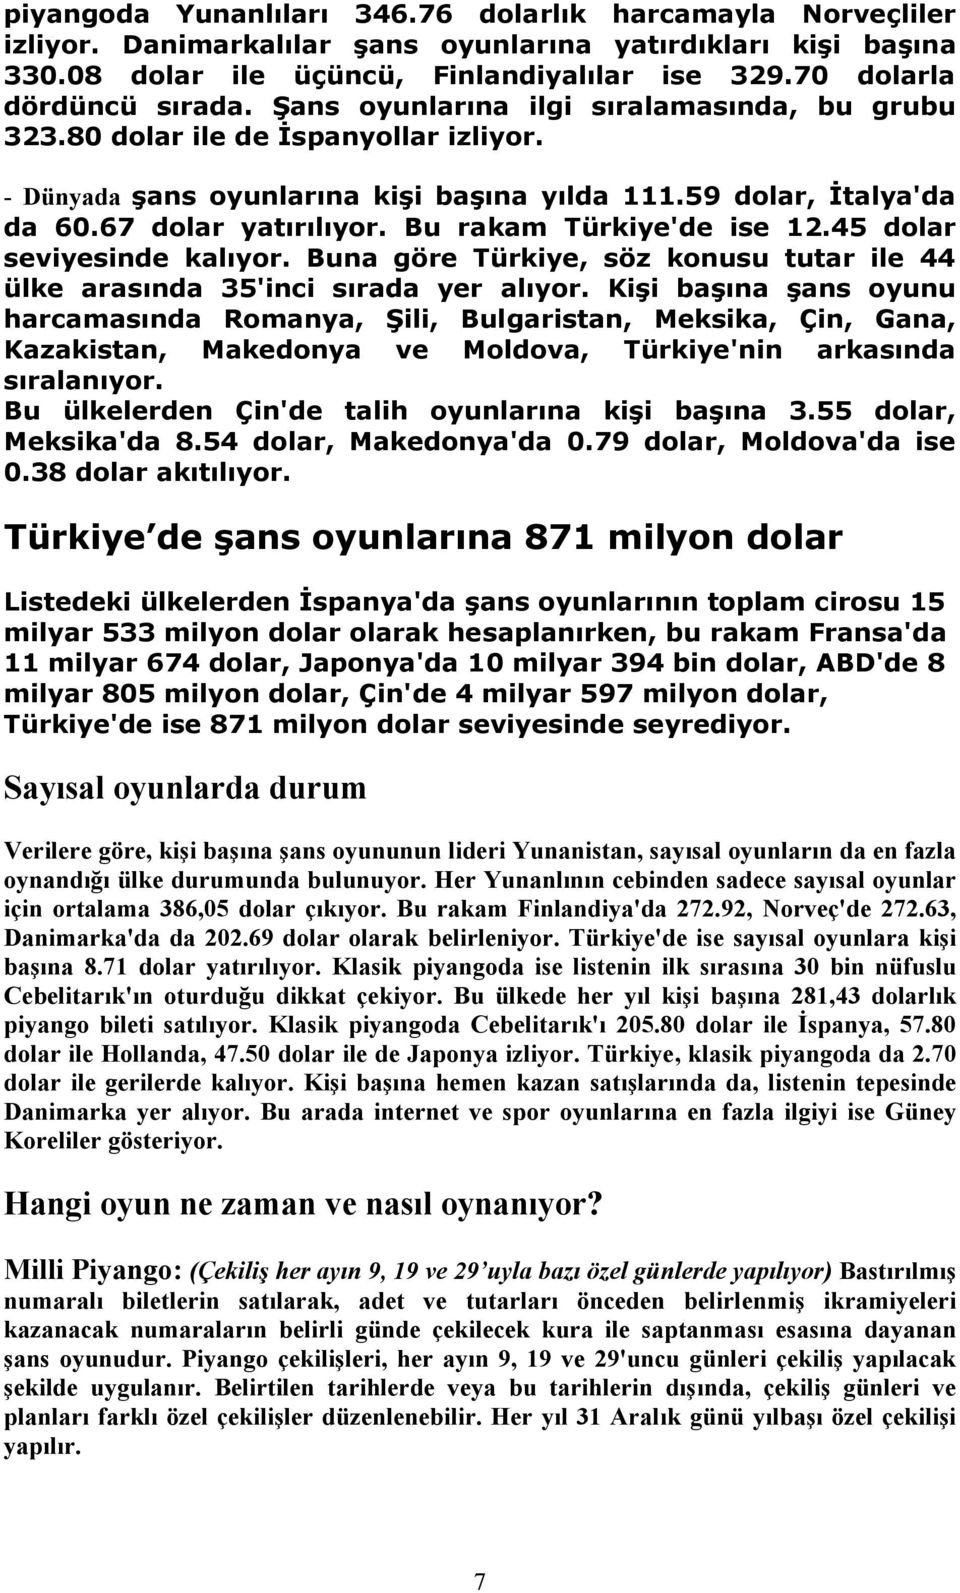 67 dolar yatırılıyor. Bu rakam Türkiye'de ise 12.45 dolar seviyesinde kalıyor. Buna göre Türkiye, söz konusu tutar ile 44 ülke arasında 35'inci sırada yer alıyor.